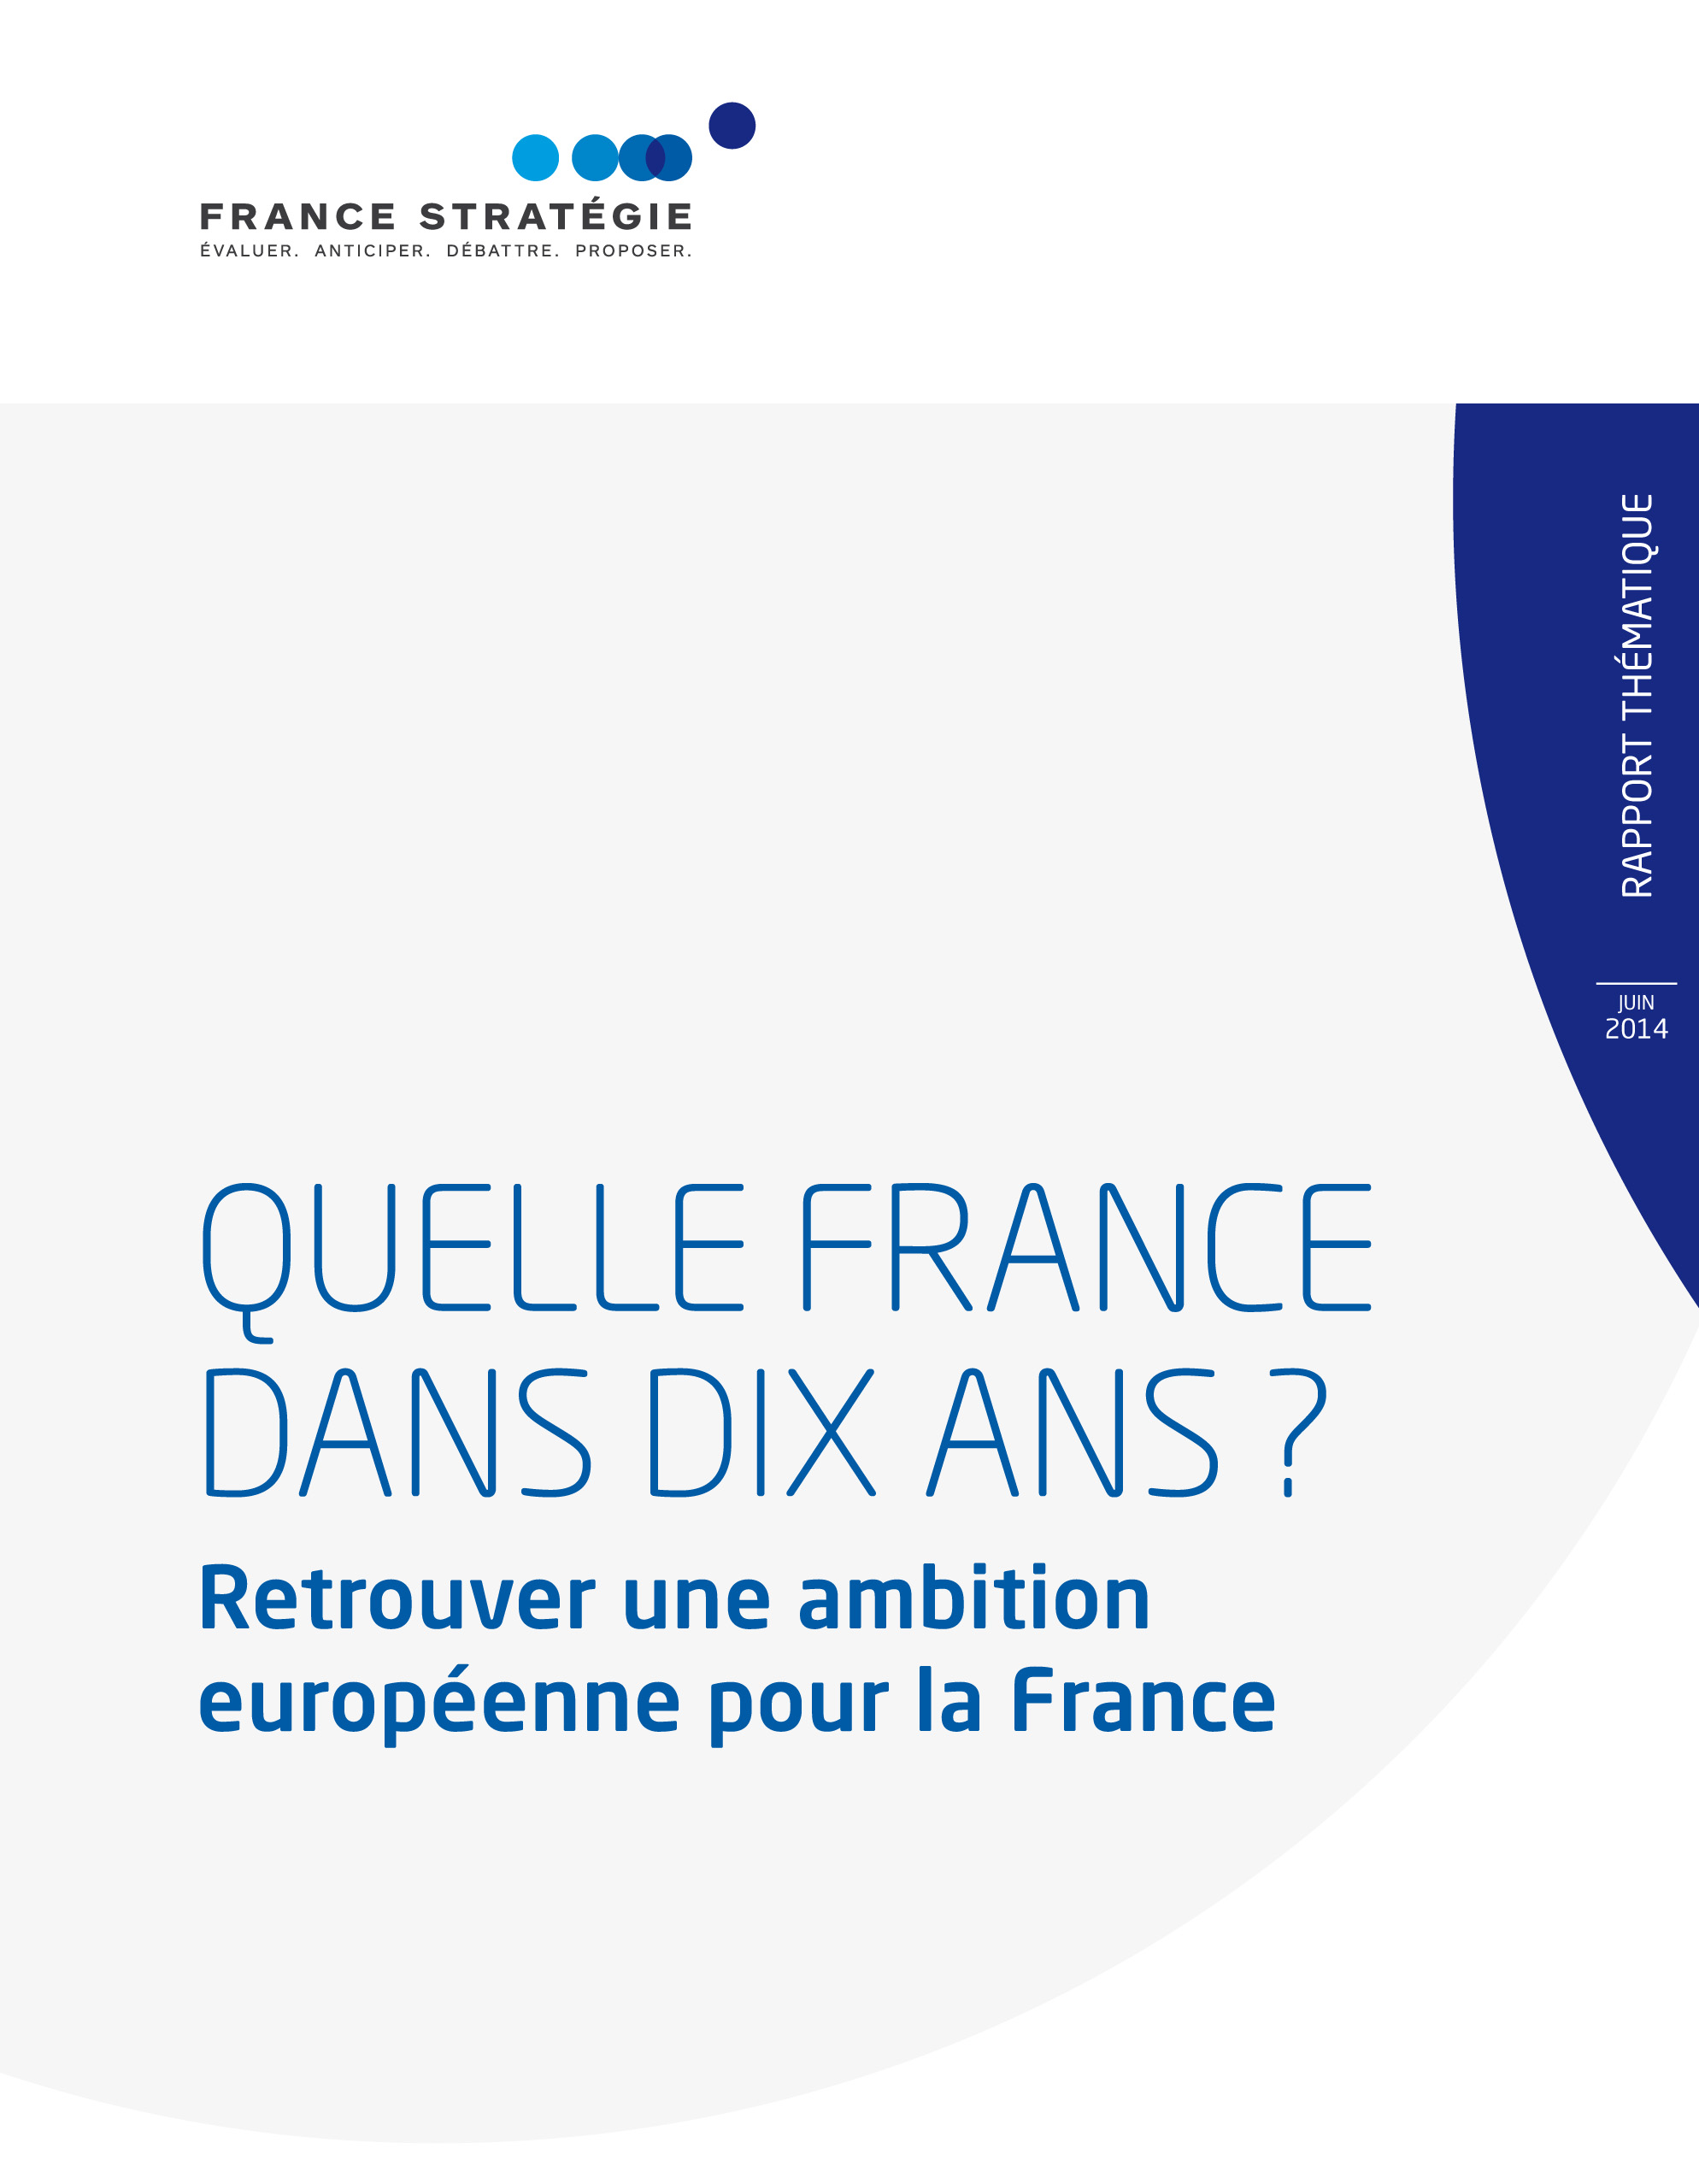 Retrouver une ambition européenne pour la France